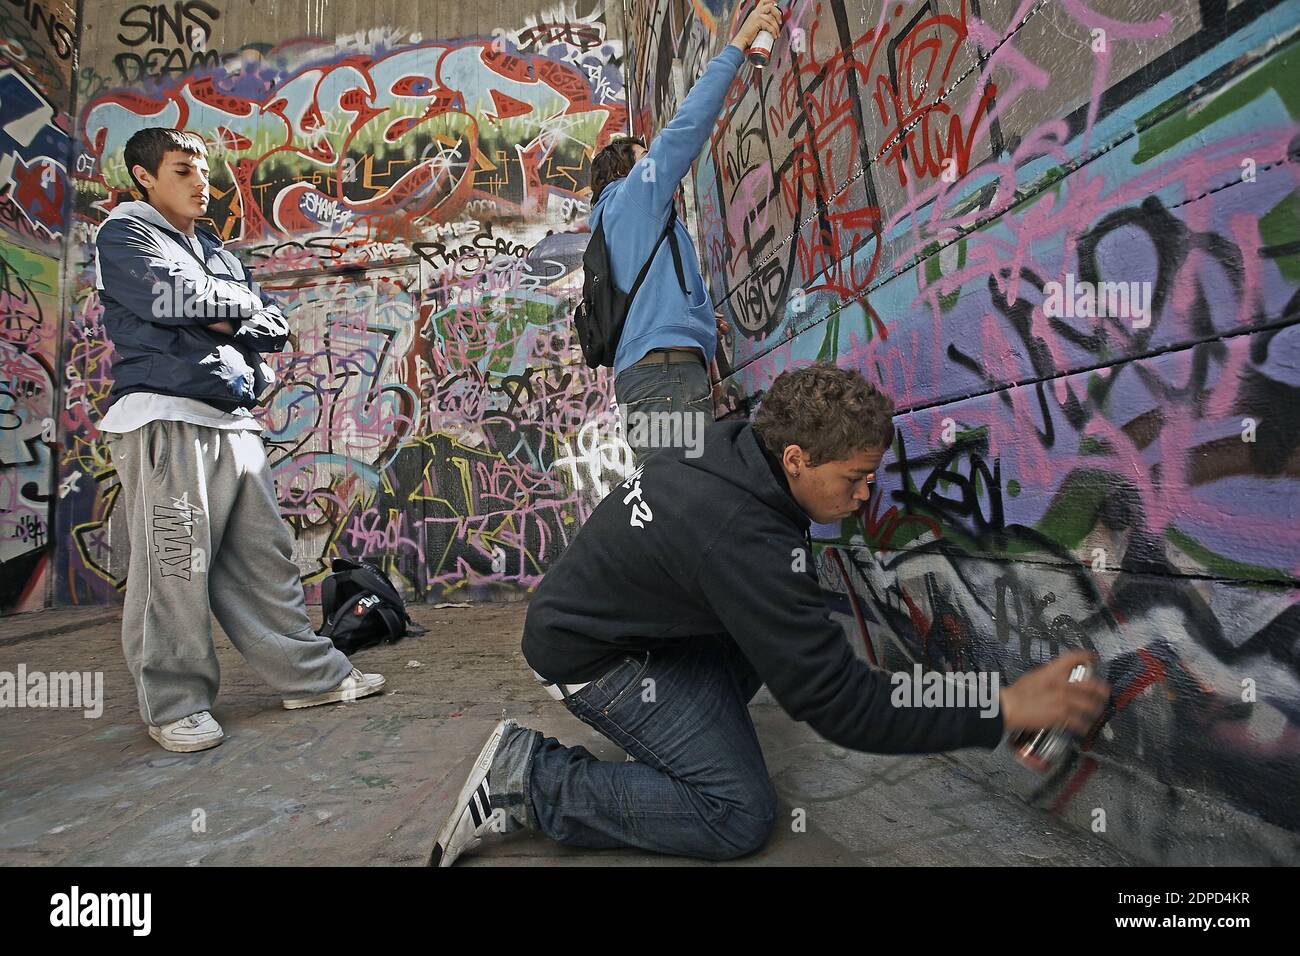 GRAN BRETAGNA / Londra / Arte di strada / i bambini piccoli stanno spruzzando un graffiti. Foto Stock